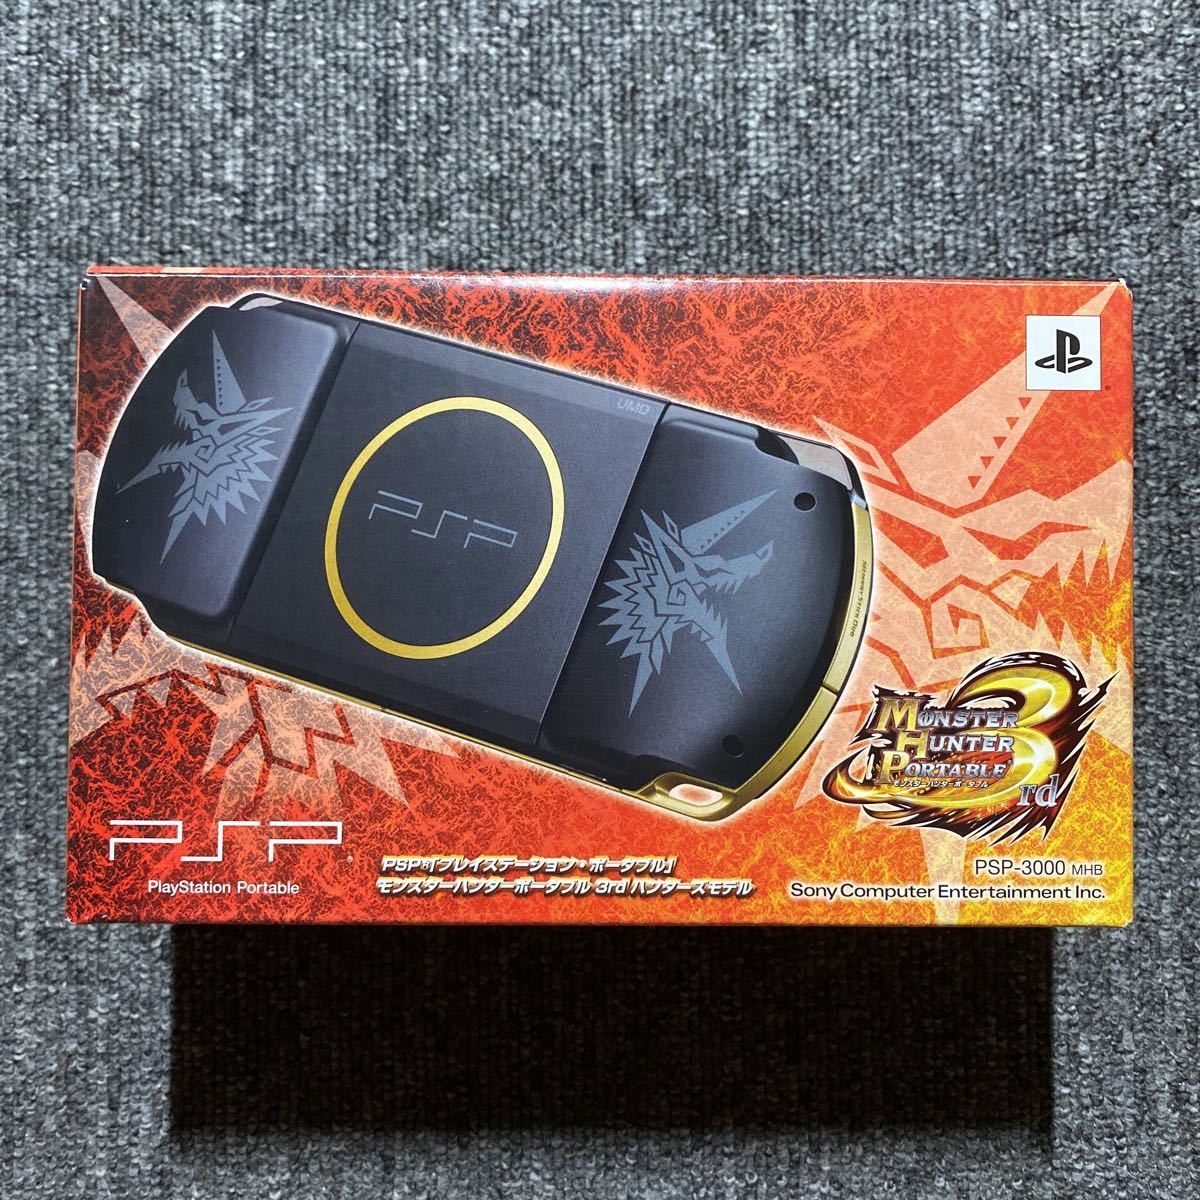 ヤフオク! -「ハンターズモデル」(PSP3000シリーズ) (PSP本体)の落札